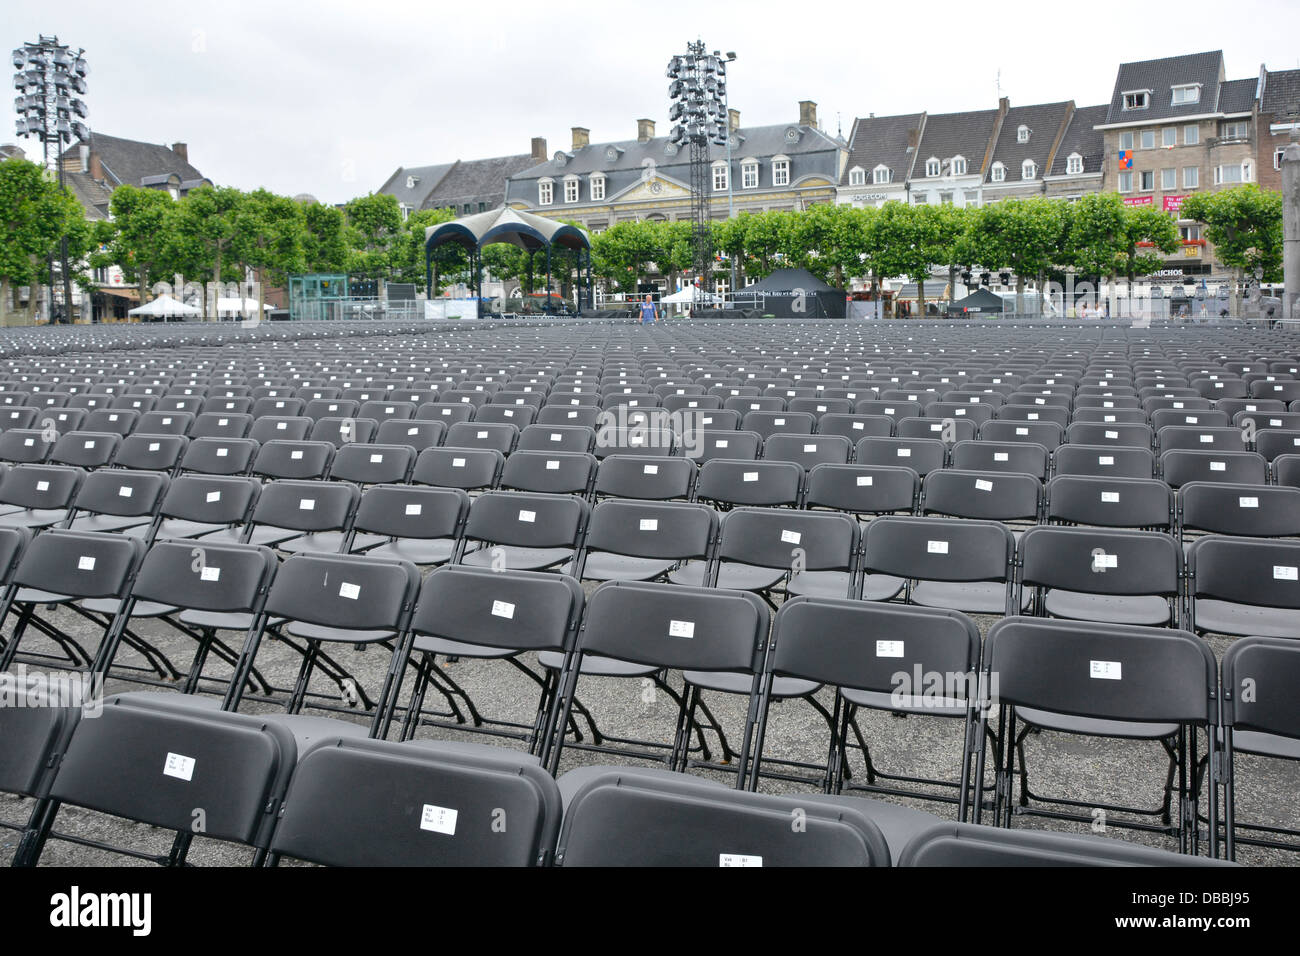 Stadt Maastricht Vrijthof Square wiederholte Reihen Klappstühle bereit für Sitzkarteninhaber beim Andre Rieu Sommerkonzert Limburg EU im Freien Stockfoto